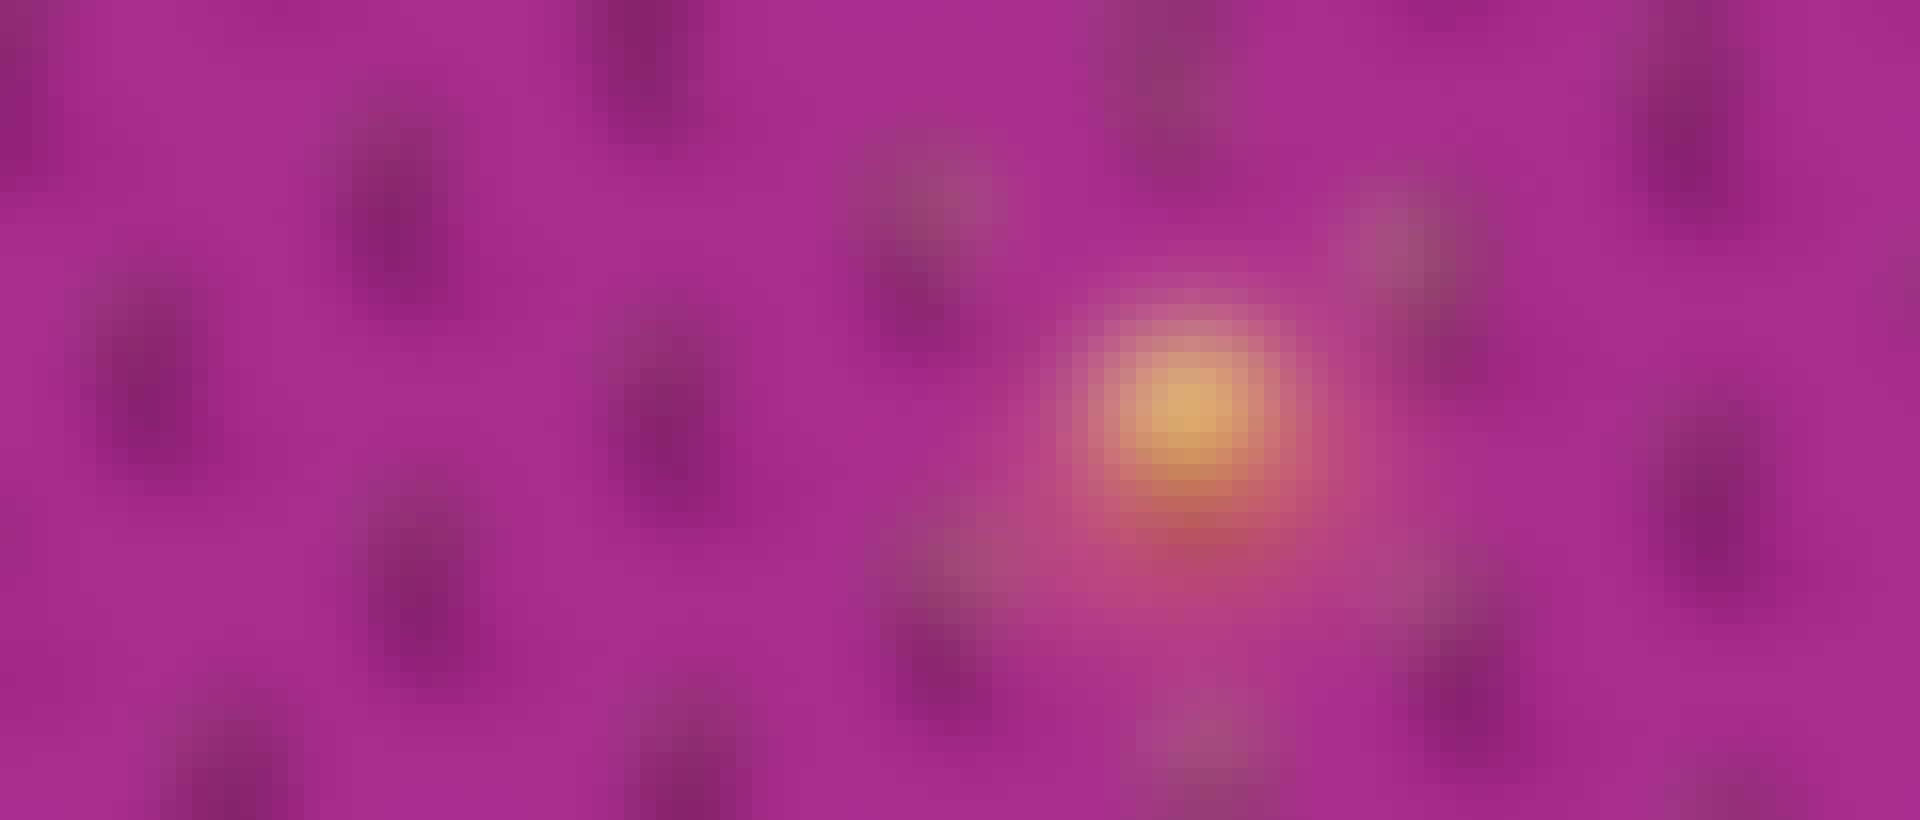 Dieses Bild zeigt viele Glühbirnen auf einem lilafarbigen Untergrund. Eine von den Glühbirnen leuchtet, alle anderen sind aus.